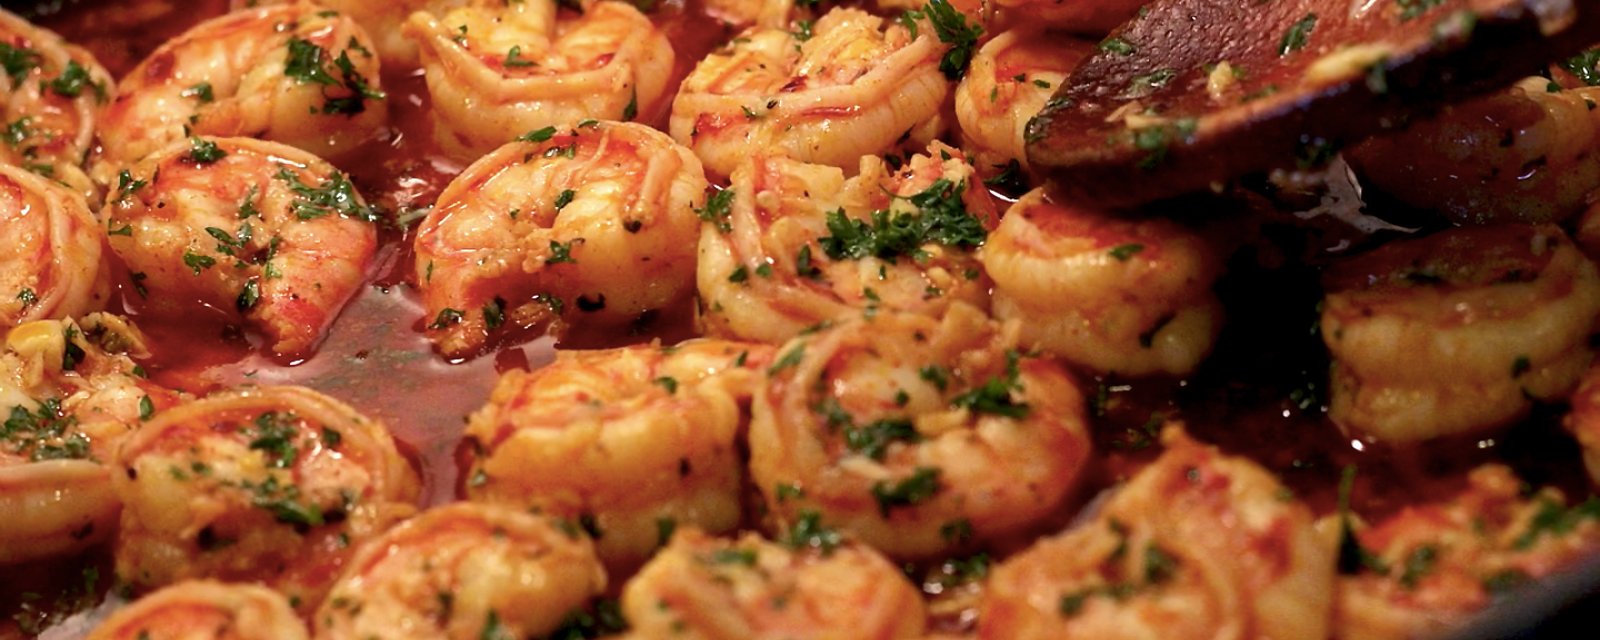 Ces incroyables crevettes se cuisinent en moins de 10 minutes ! On les aime éperdument !